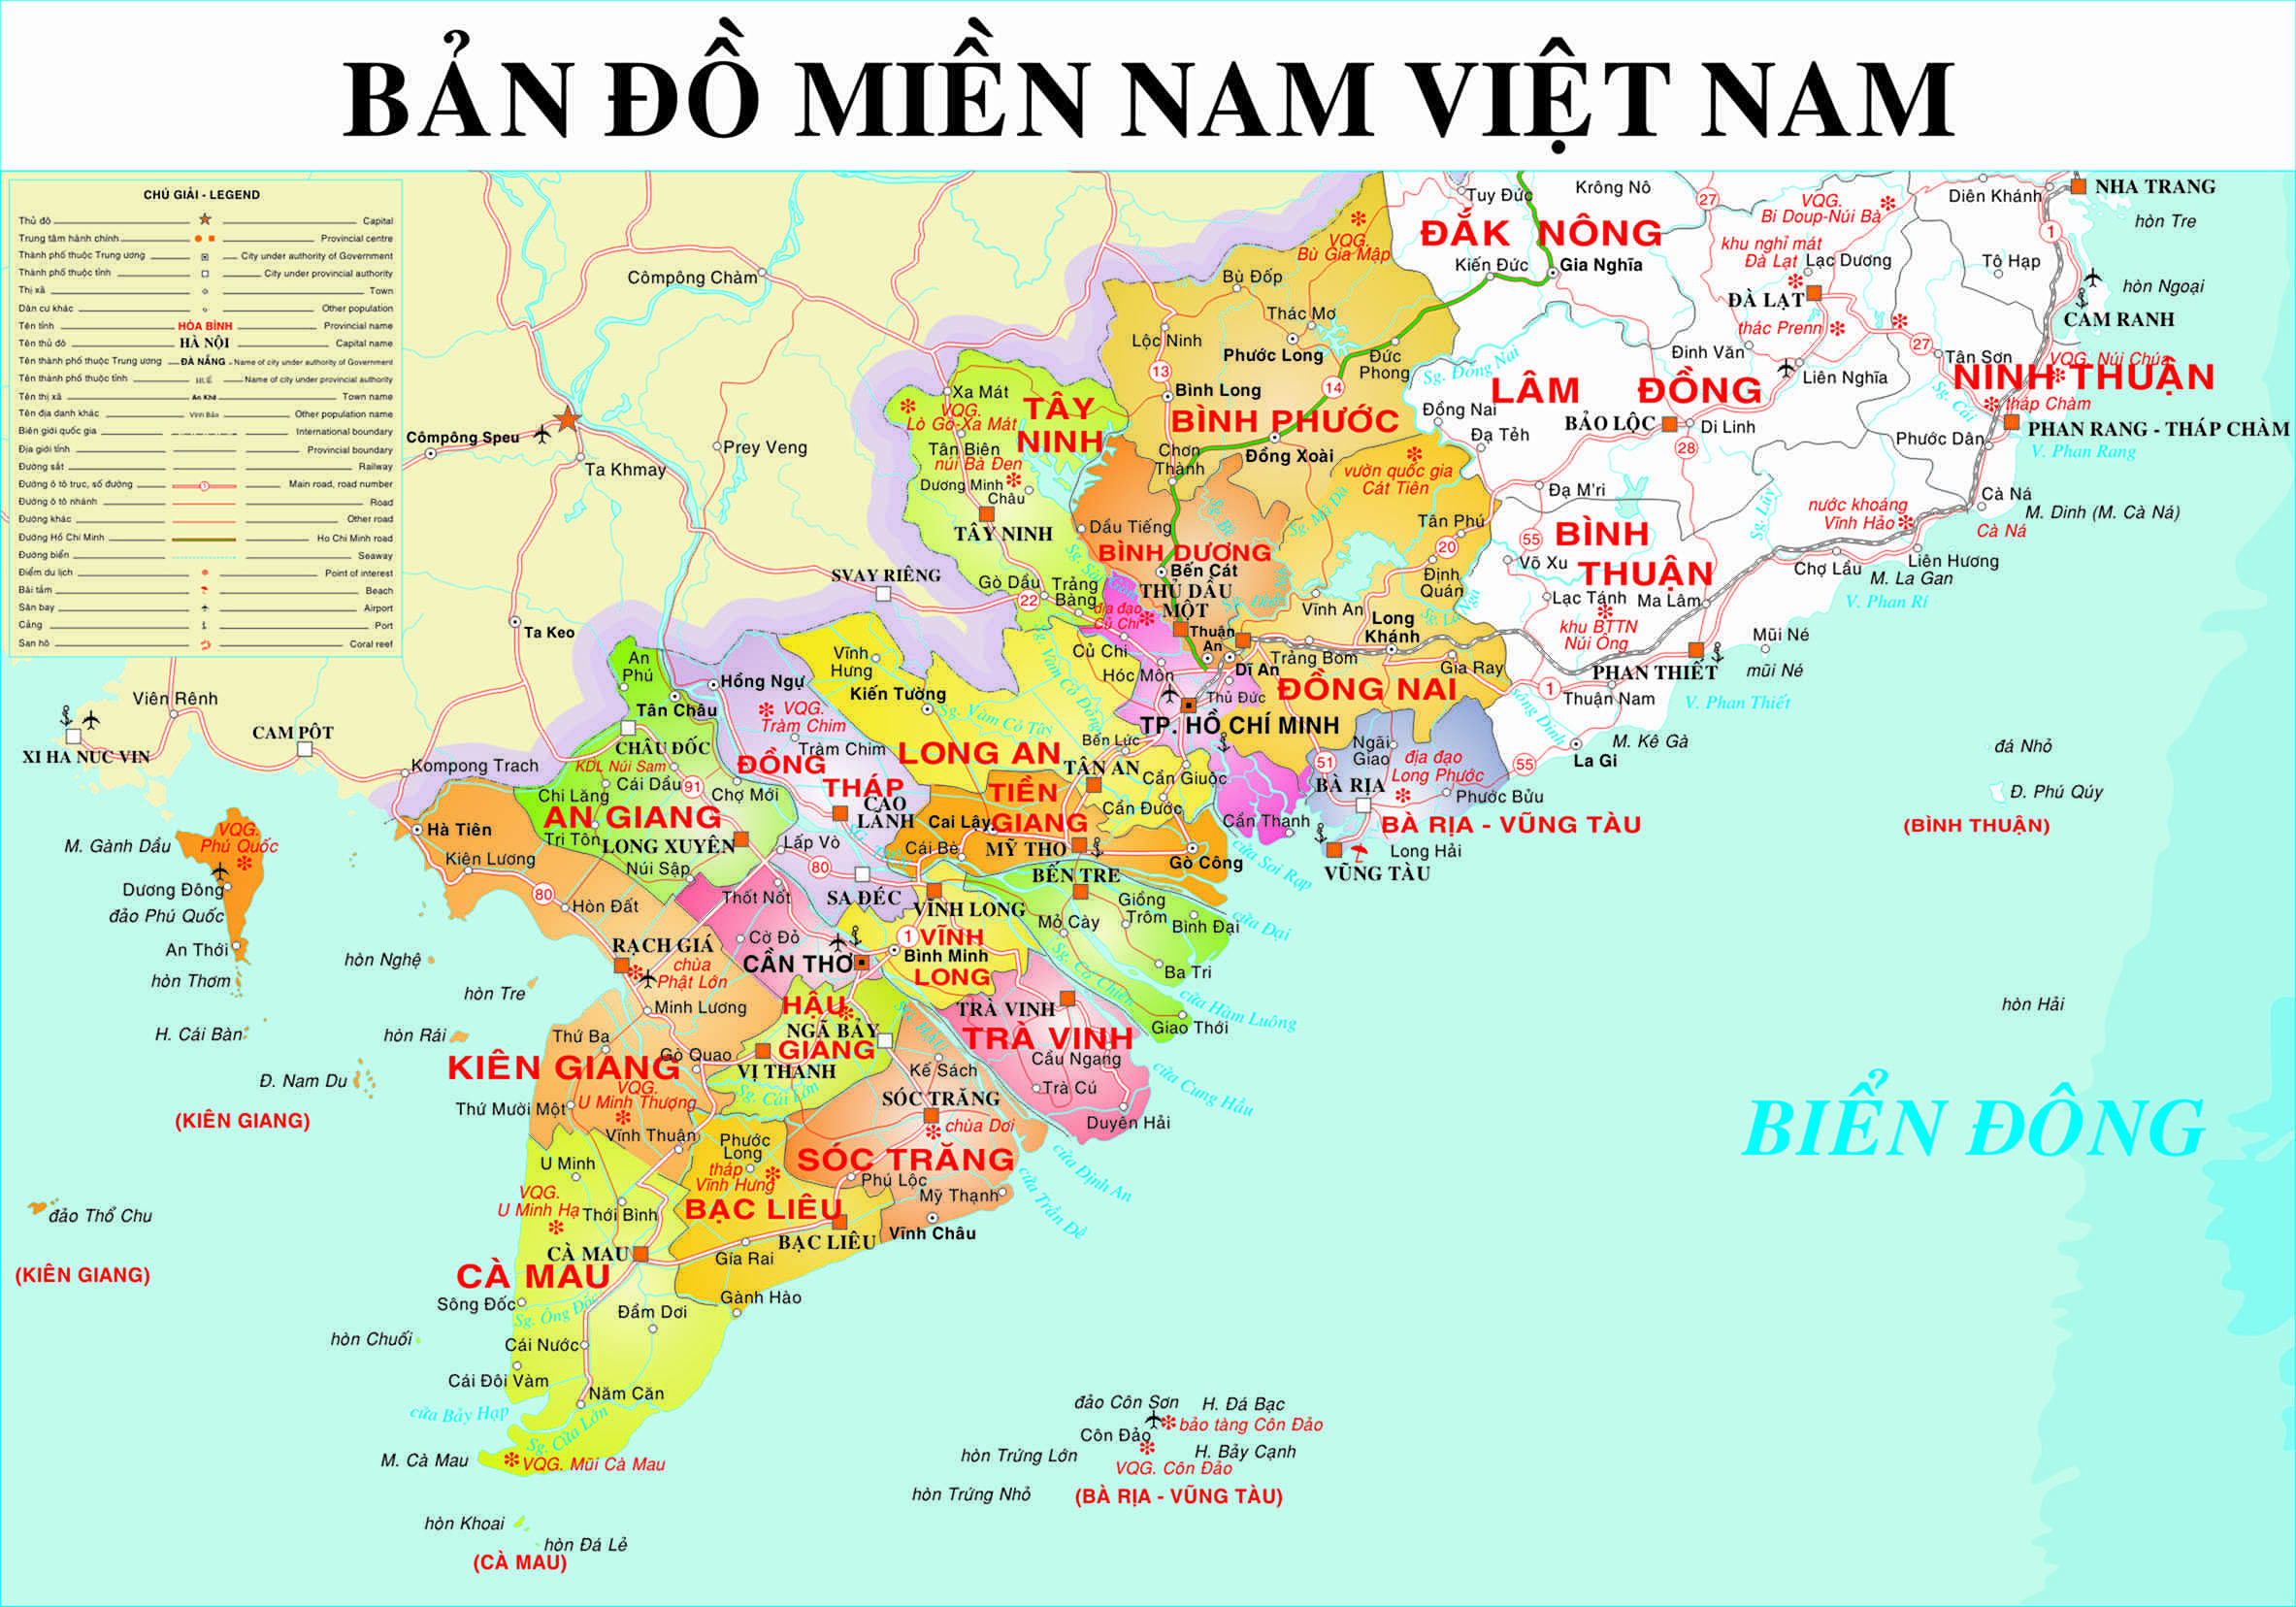 Bản đồ miền nam 2024: Cập nhật mới nhất về miền Nam Việt Nam trong năm 2024? Khám phá bản đồ miền Nam 2024 để biết tất cả những gì bạn cần. Bản đồ cung cấp thông tin đầy đủ về các tỉnh, thành phố, đường quốc lộ và khu dân cư, cho bạn cái nhìn tổng quan về khu vực này.